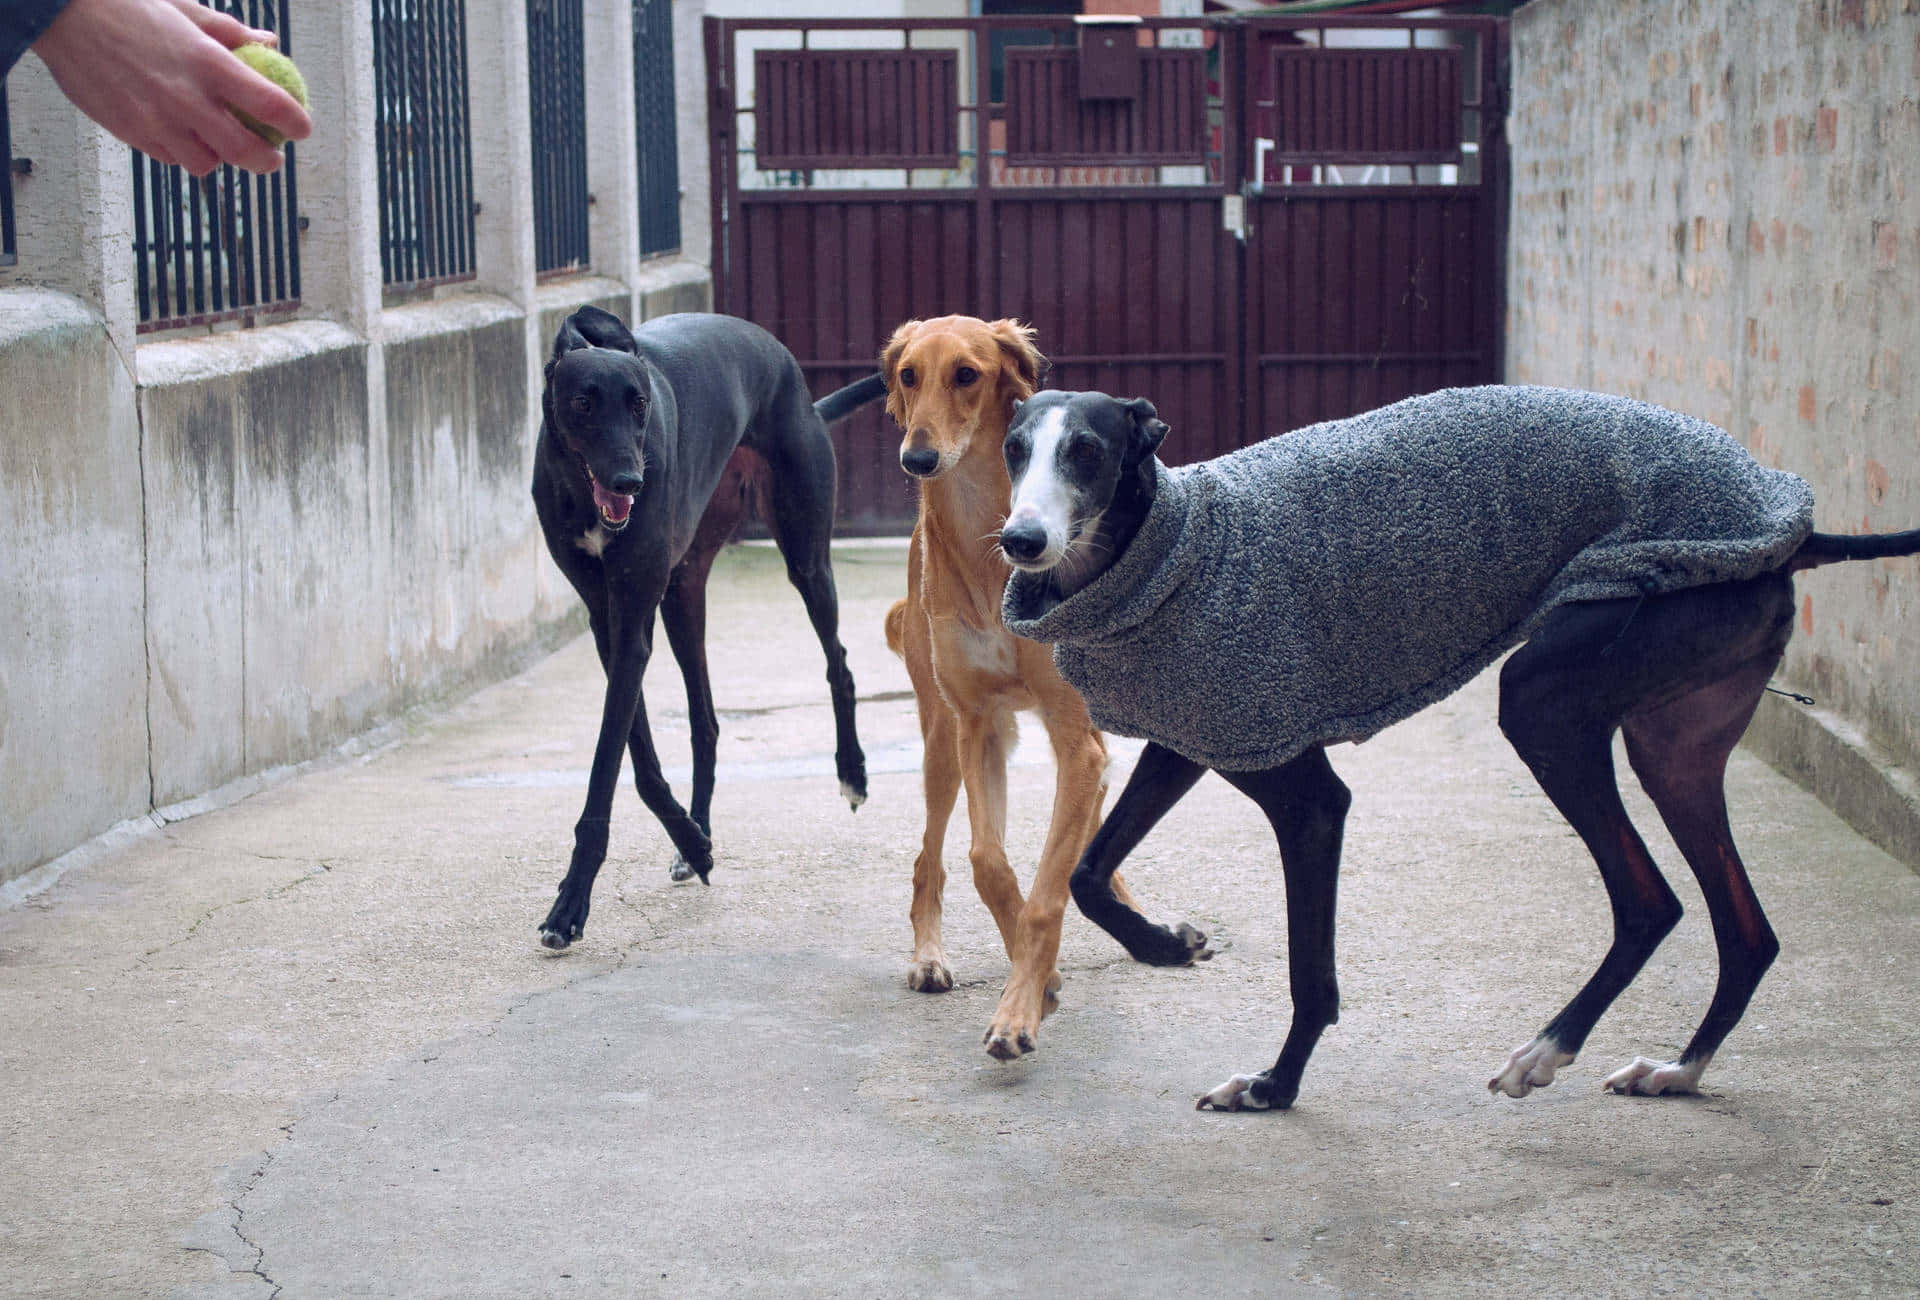 Greyhoundbakgrund